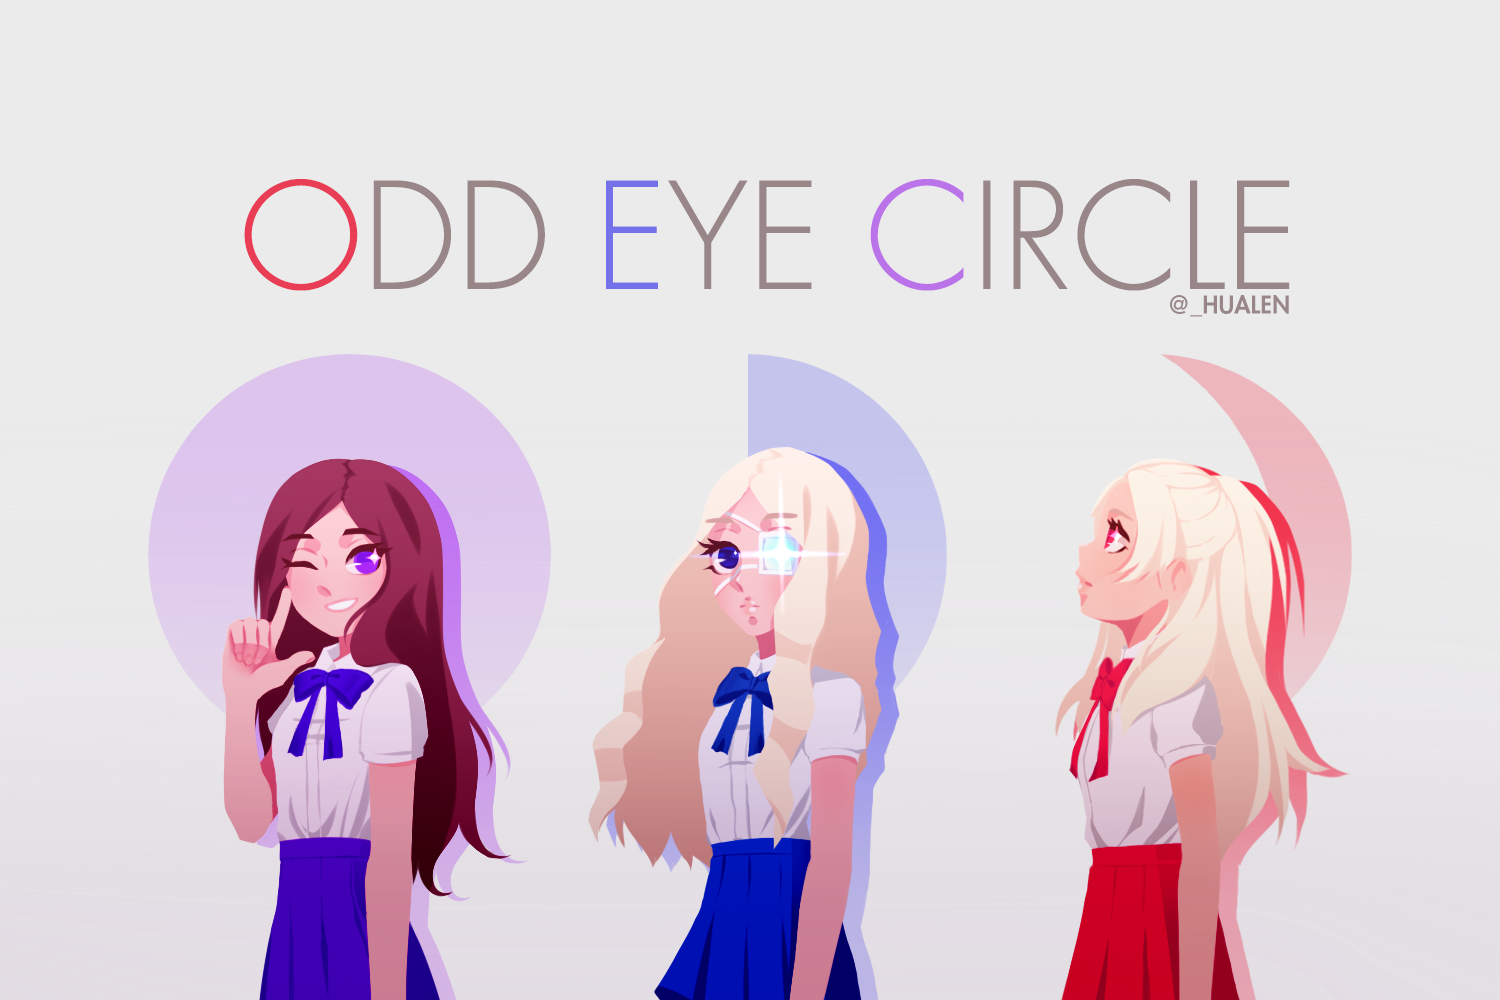 Odd Eye Circle fanart I drew!